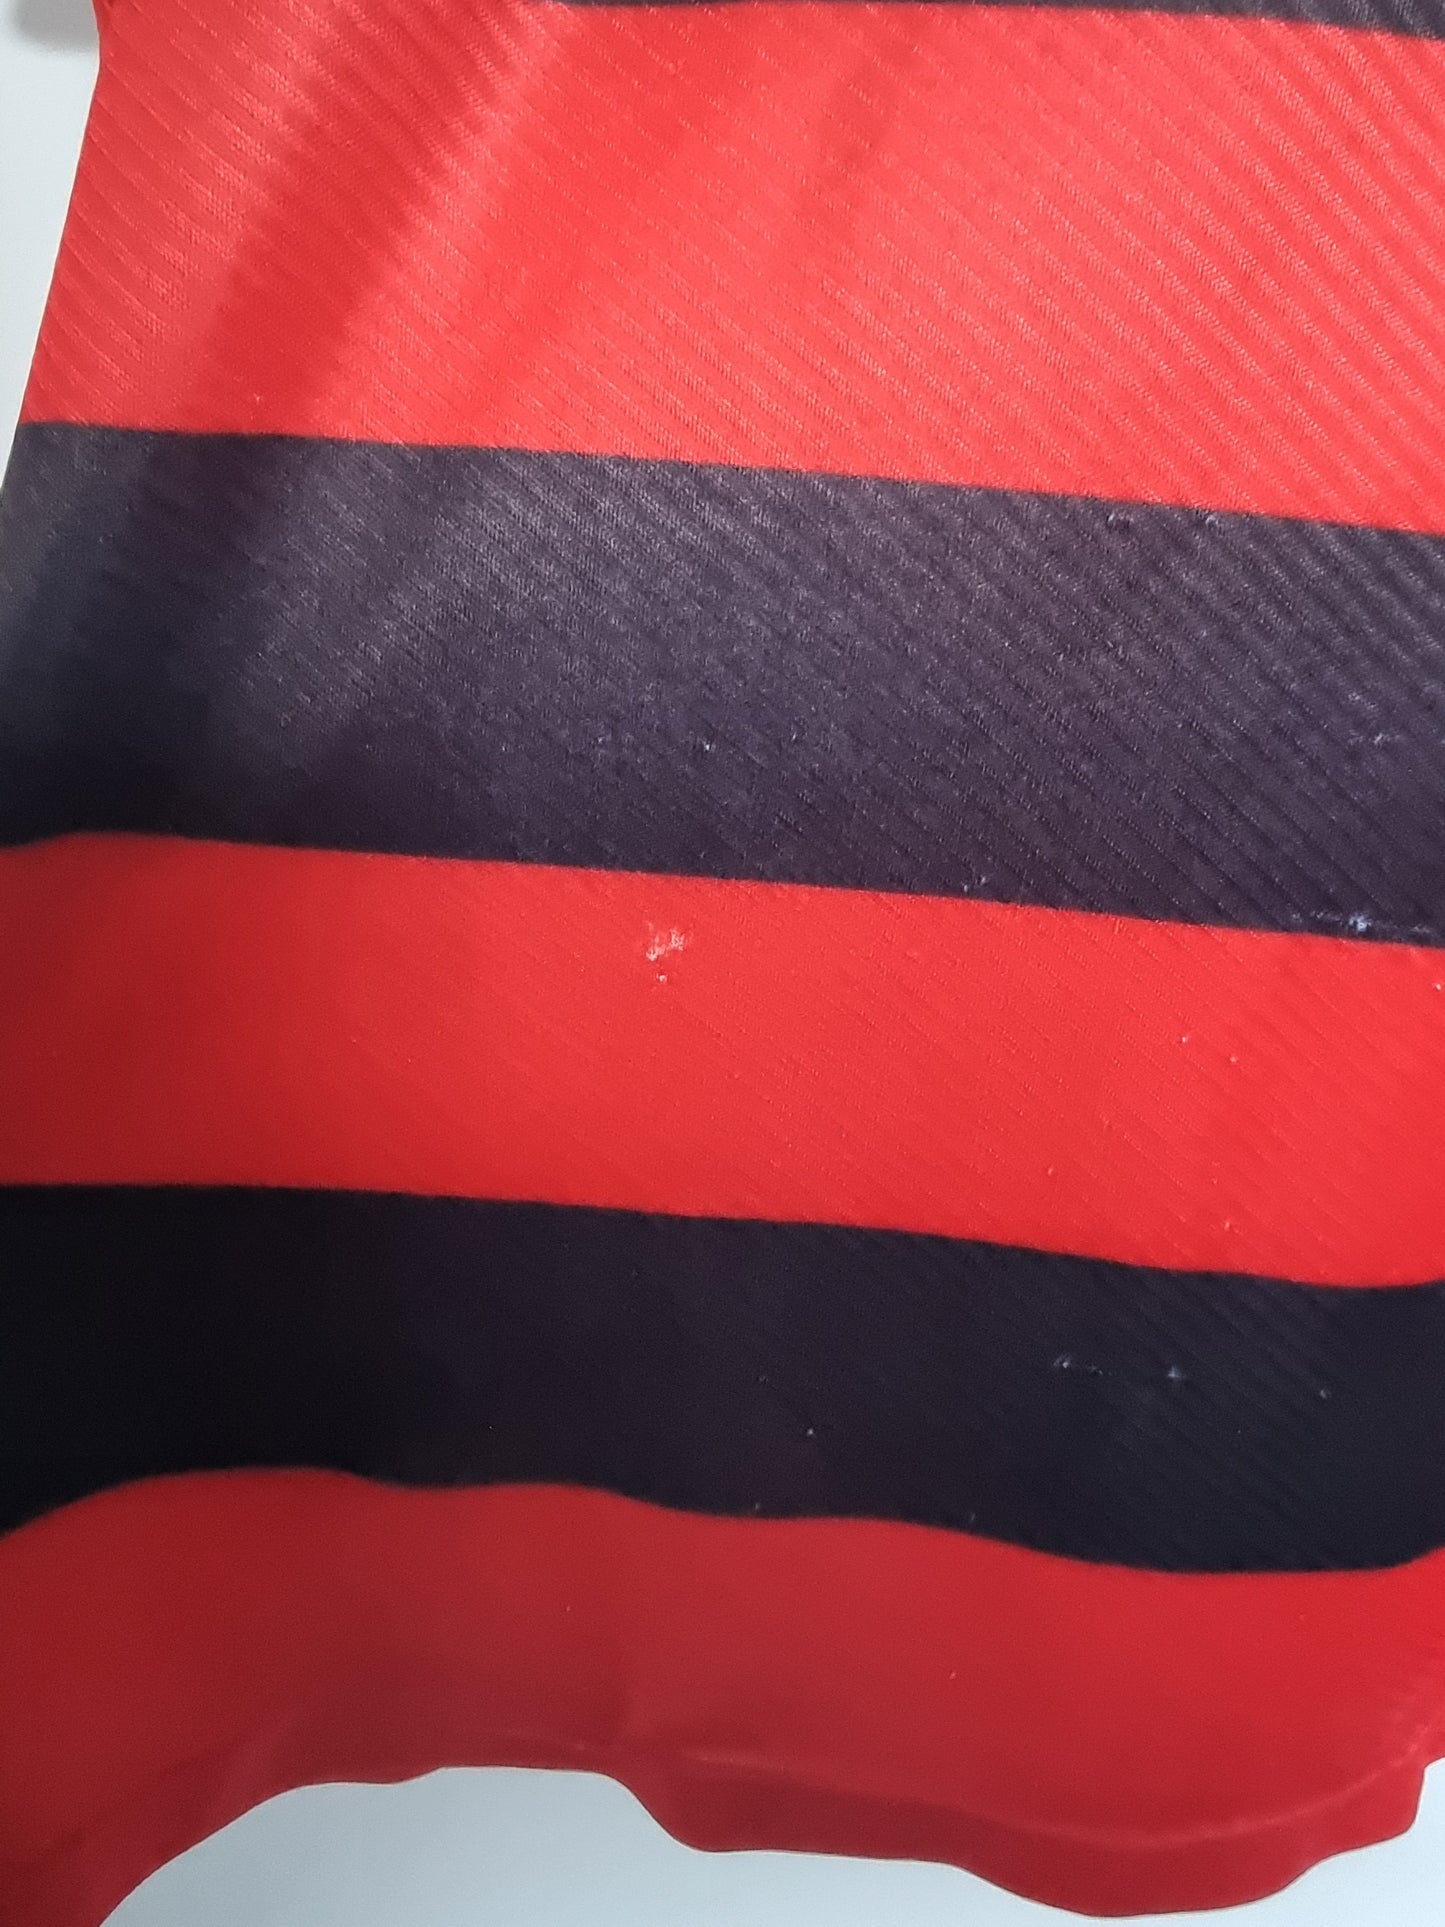 Umbro Flamengo 94/95 Home Shirt Medium